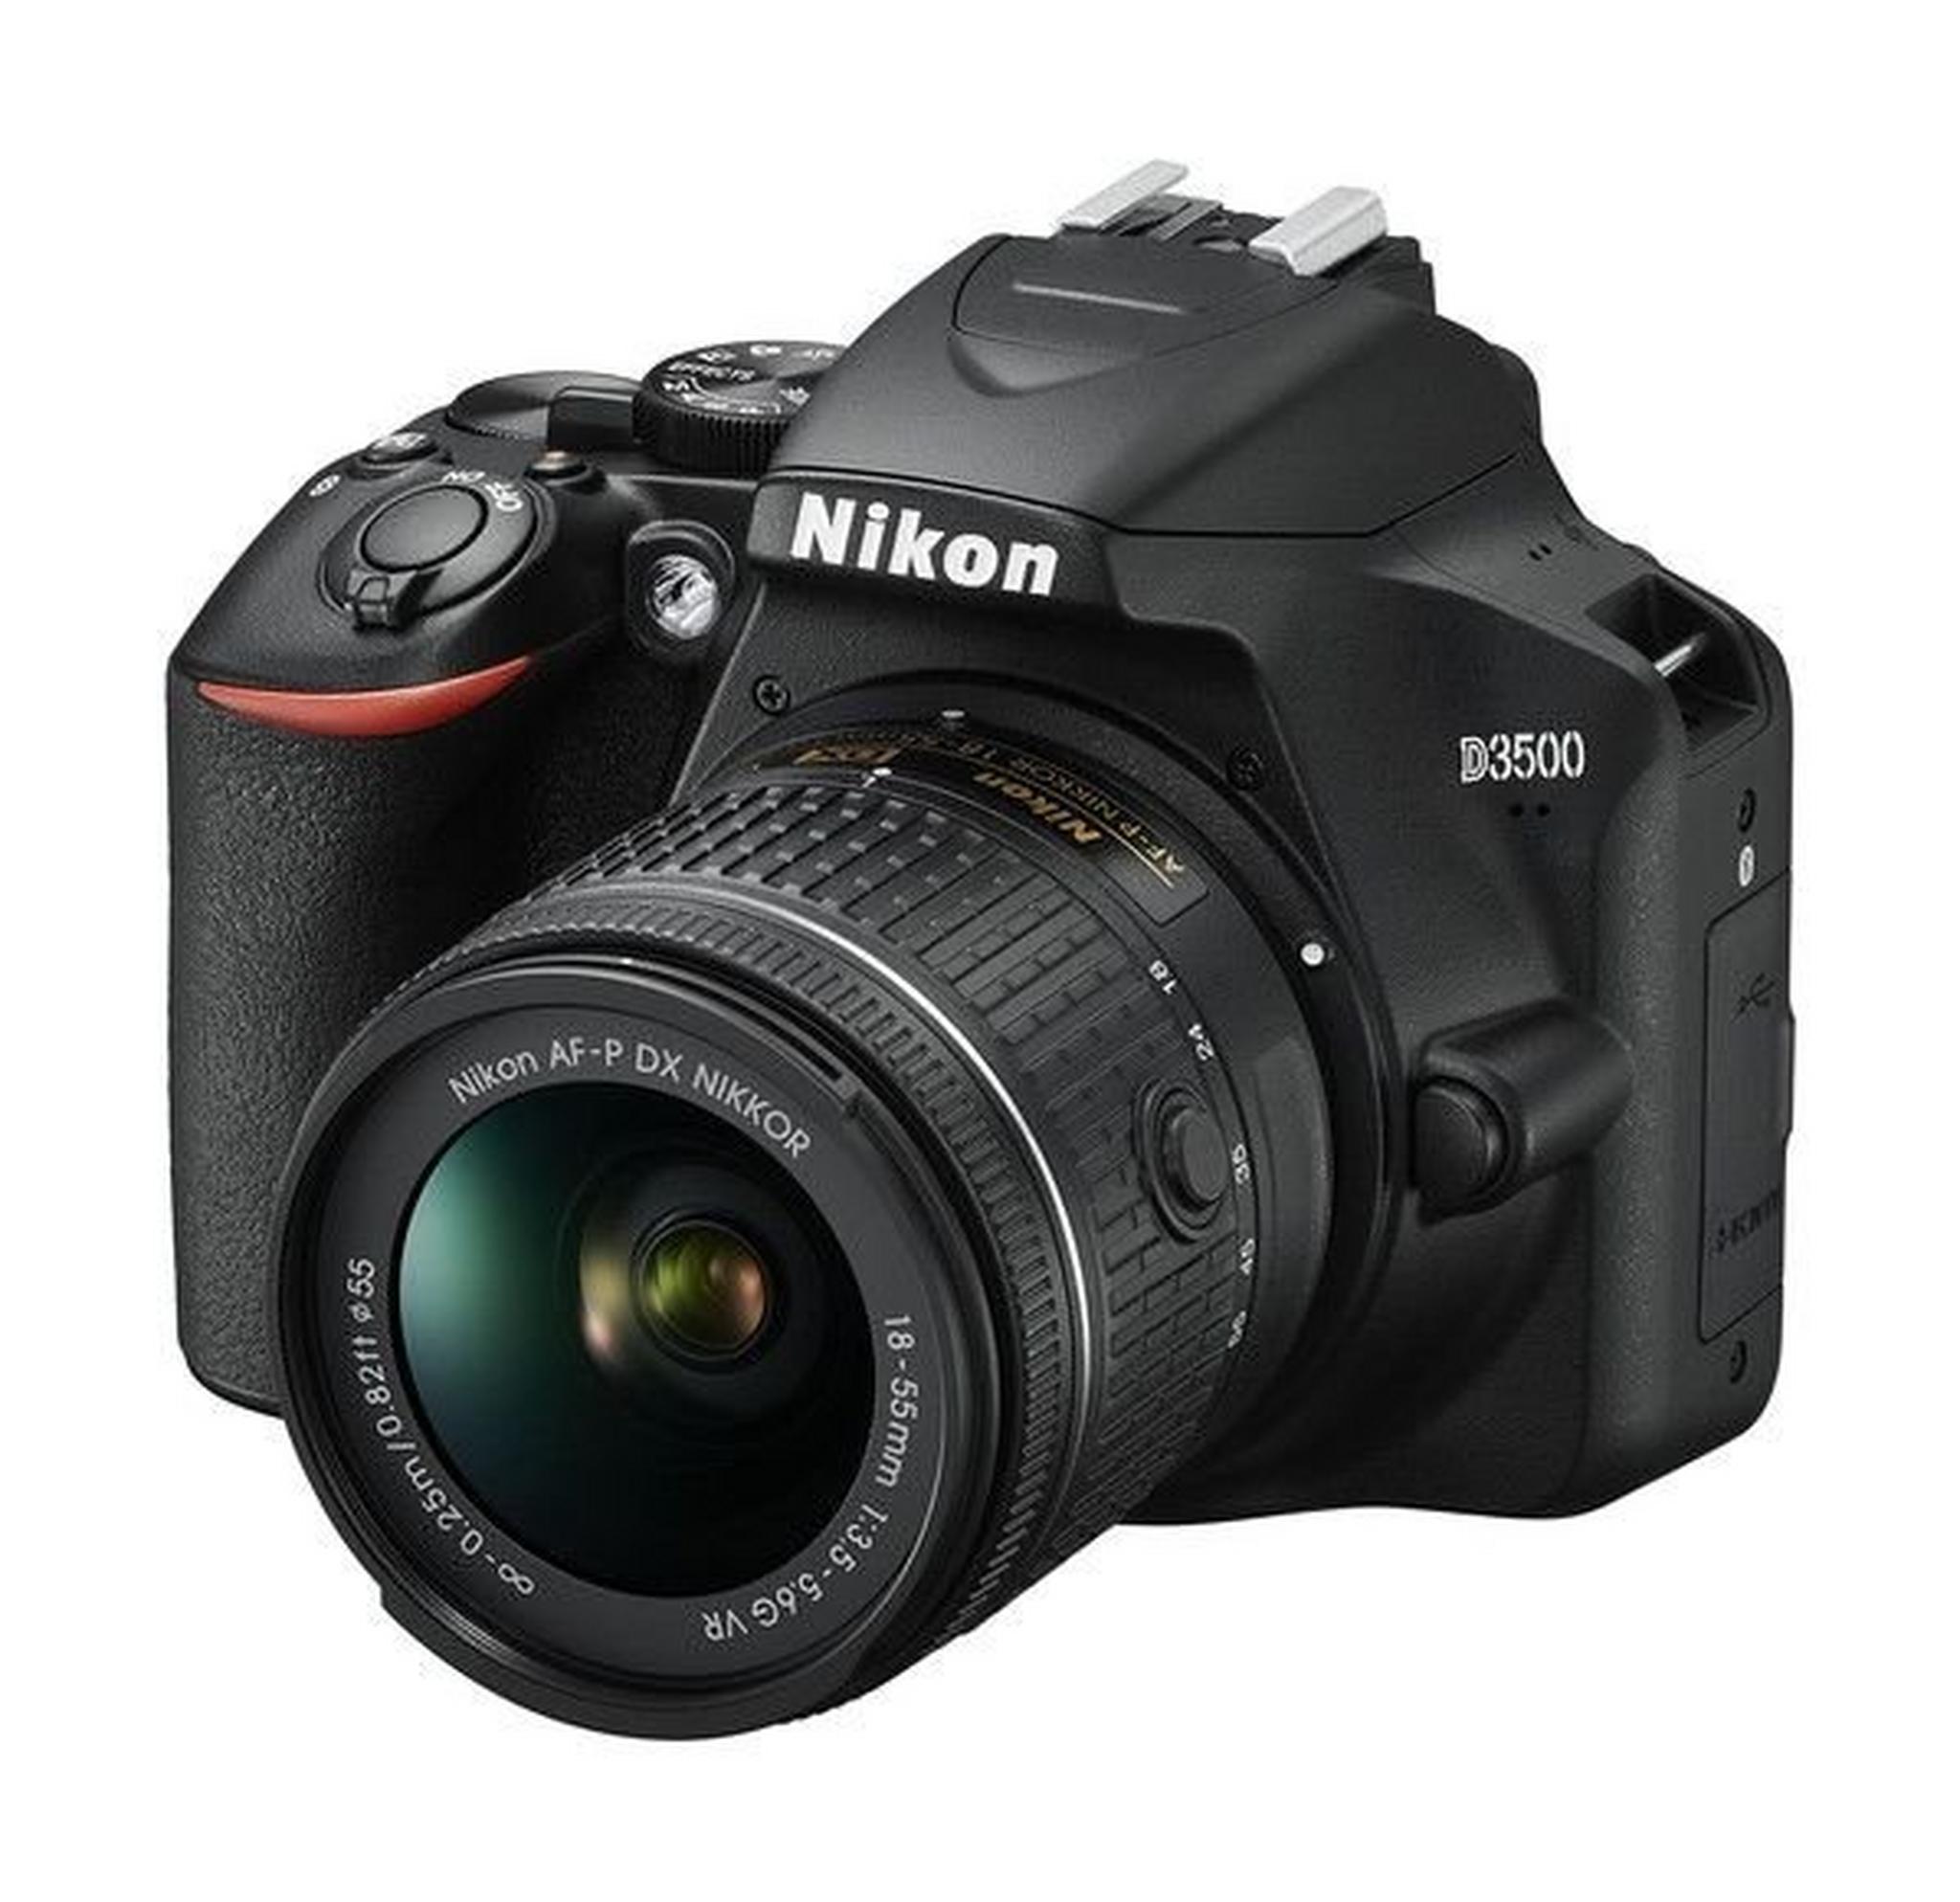 كاميرا نيكون  D3500  الرقمية بعدسة عاكسة DSLR +  عدسة 18-55 ملم - أسود